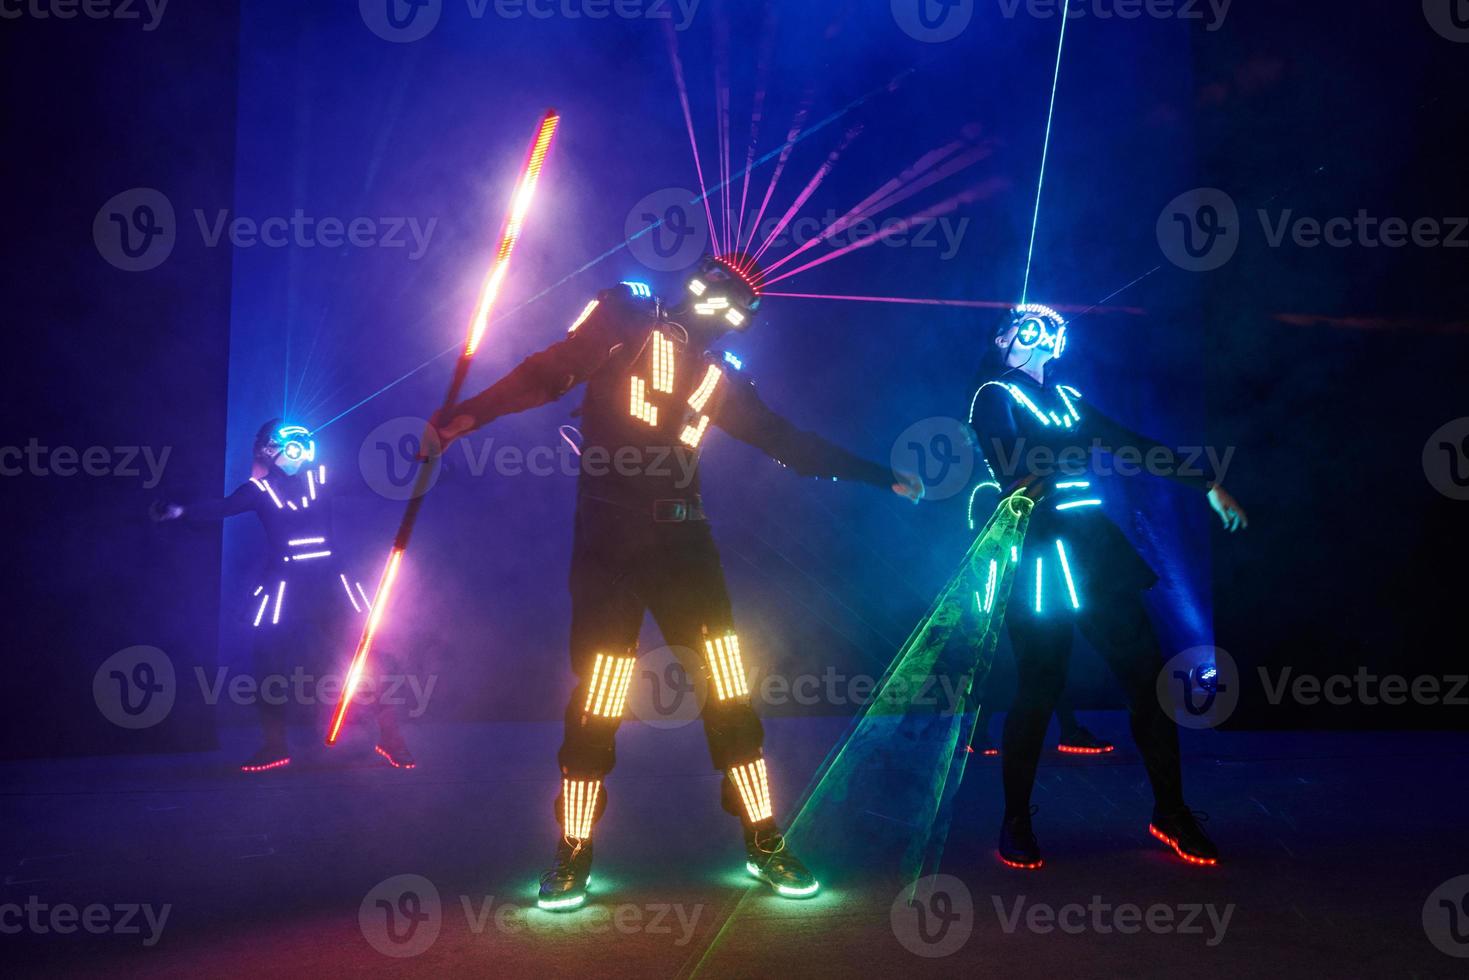 Lasershow-Performance, Tänzer in LED-Anzügen mit LED-Lampe, sehr schöne Nachtclub-Performance, Party foto